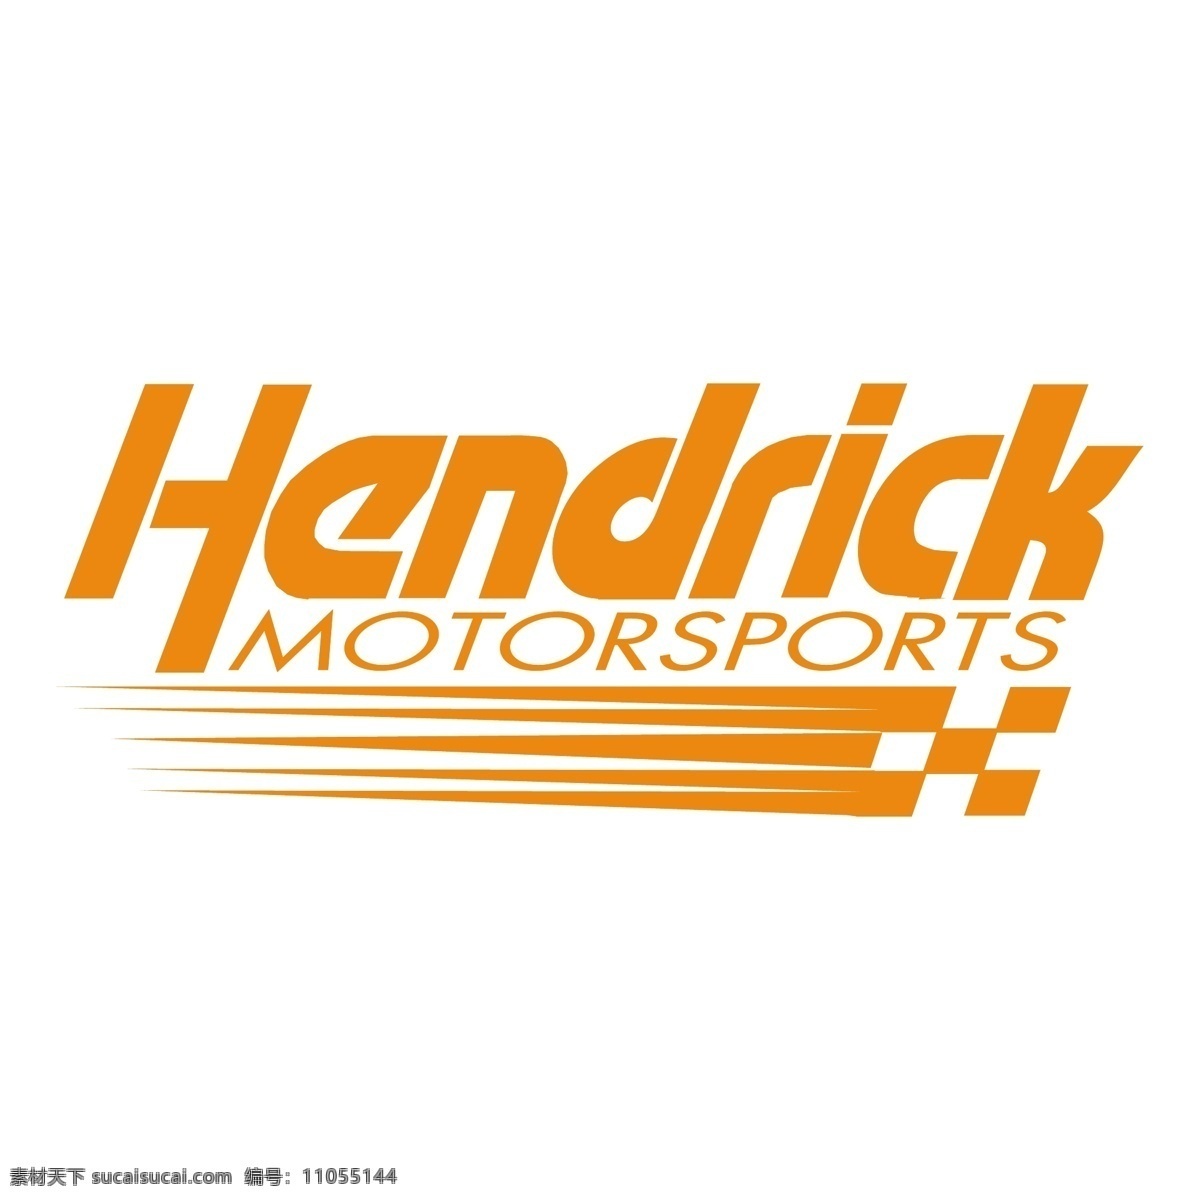 亨德里克 赛车 公司 公司标志 免费 标志 自由 psd源文件 logo设计